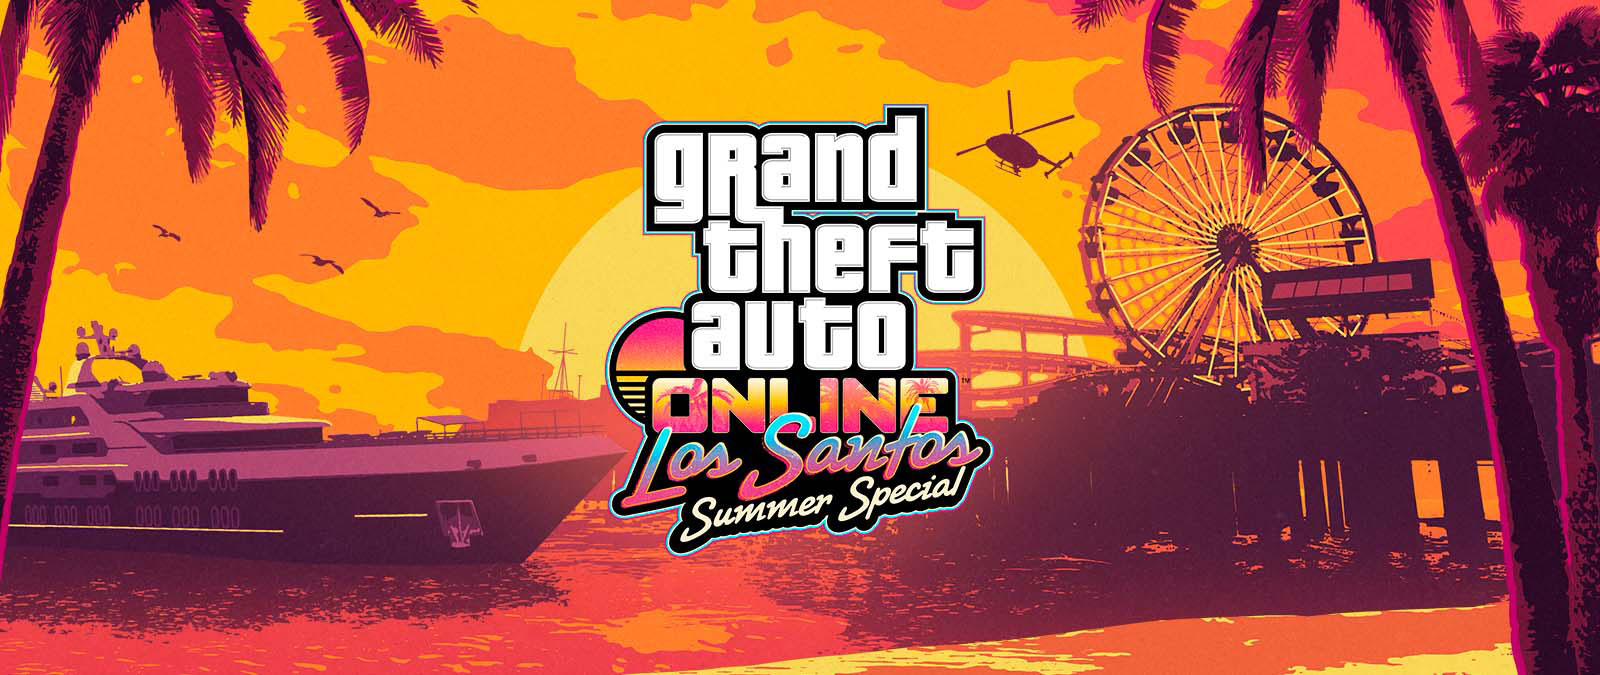 Grand Theft Auto Online. Los Santos Summer Special. Un yacht, une grande roue et un hélicoptère au coucher du soleil.